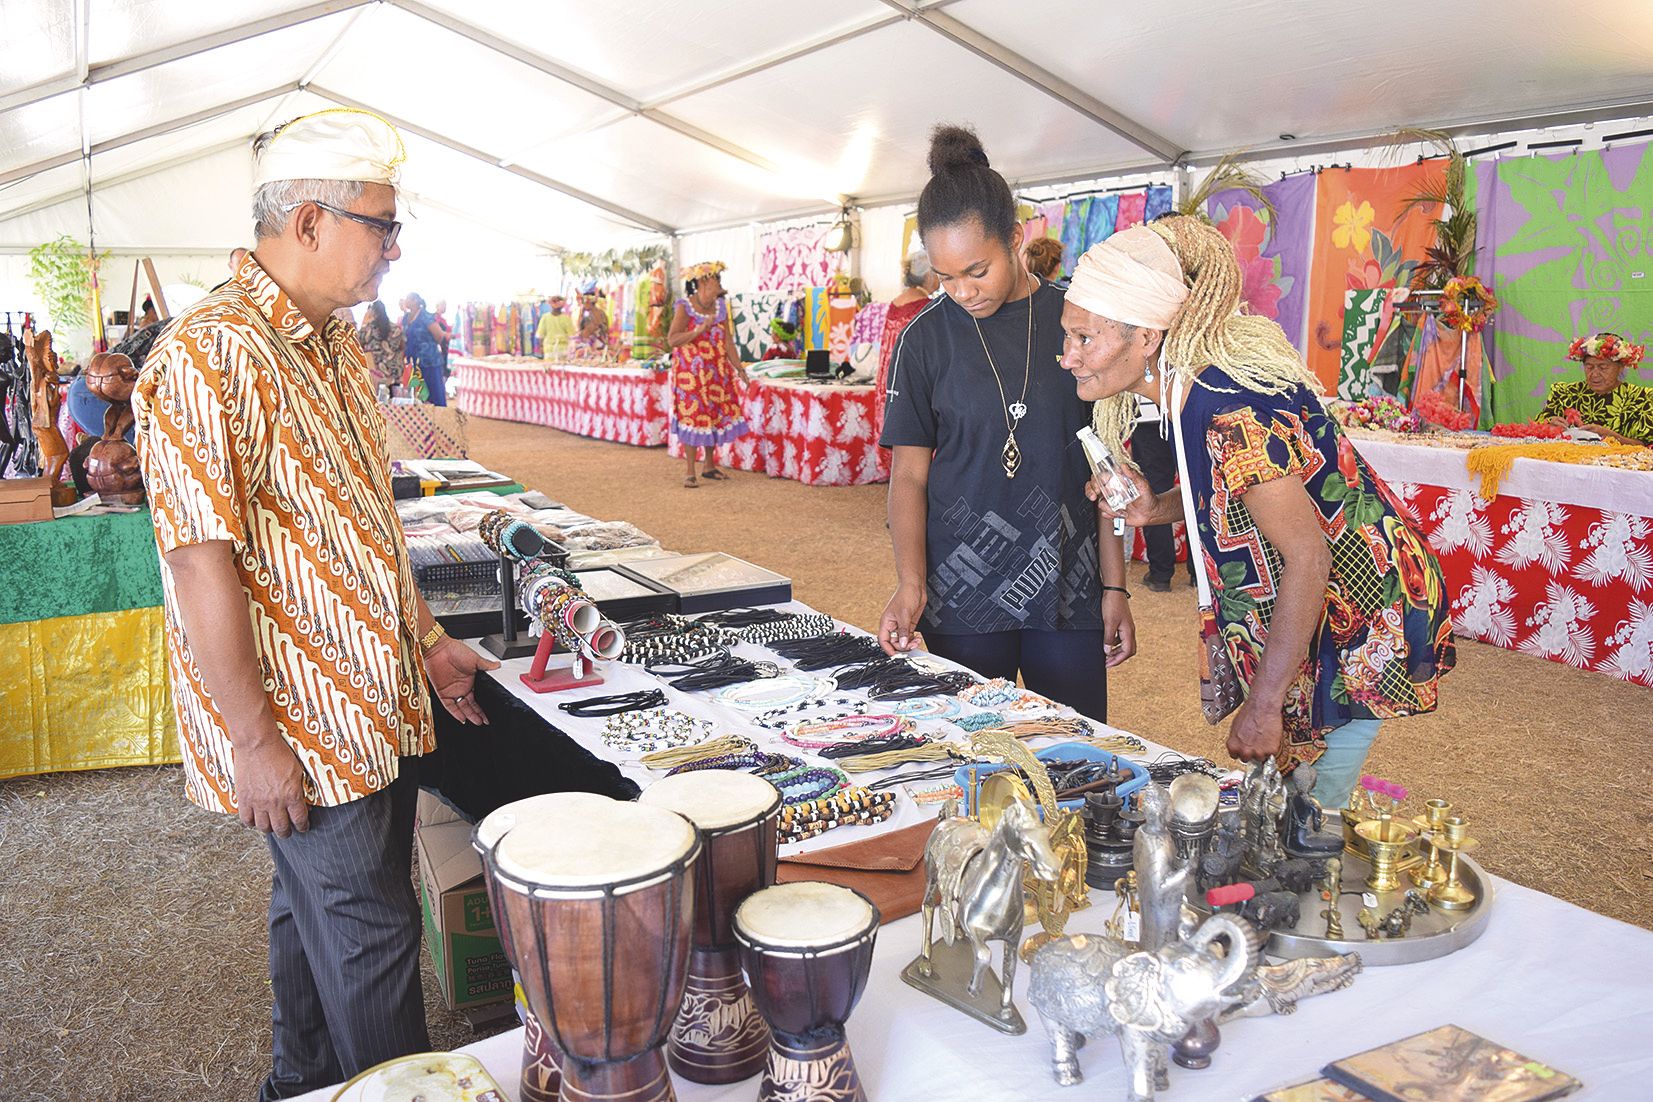 Du côté de l’artisanat, là encore, toutes les communautés étaient représentées, comme ici l’Indonésie avec Suhadi. « Ce festival est une très bonne idée », a-t-il trouvé.